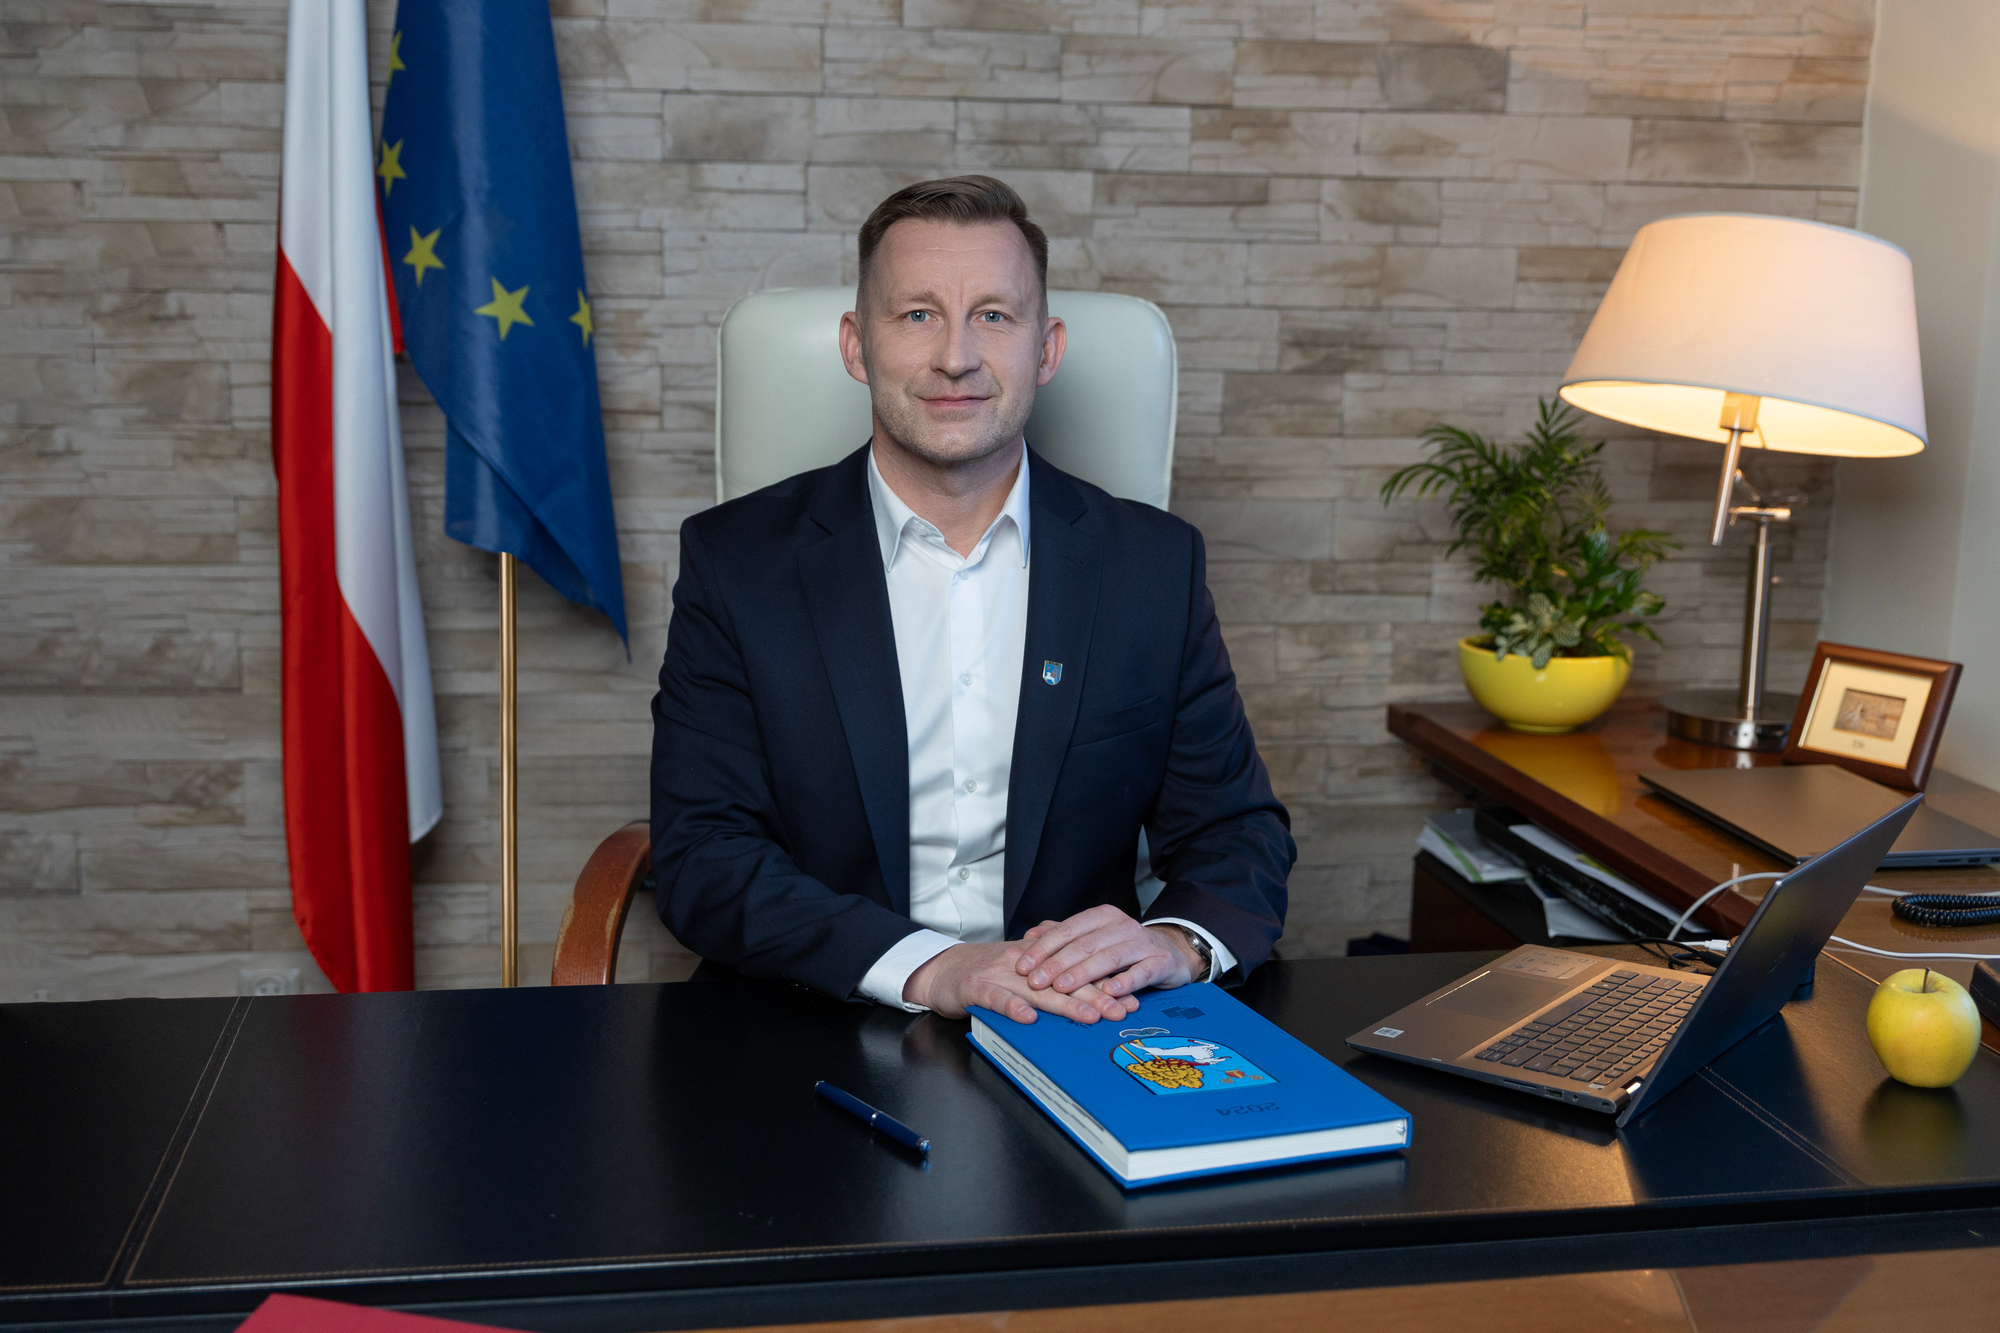 Tomasz Andrukiewicz zum Bürgermeister von Ełk gewählt – Sieg im ersten Wahlgang